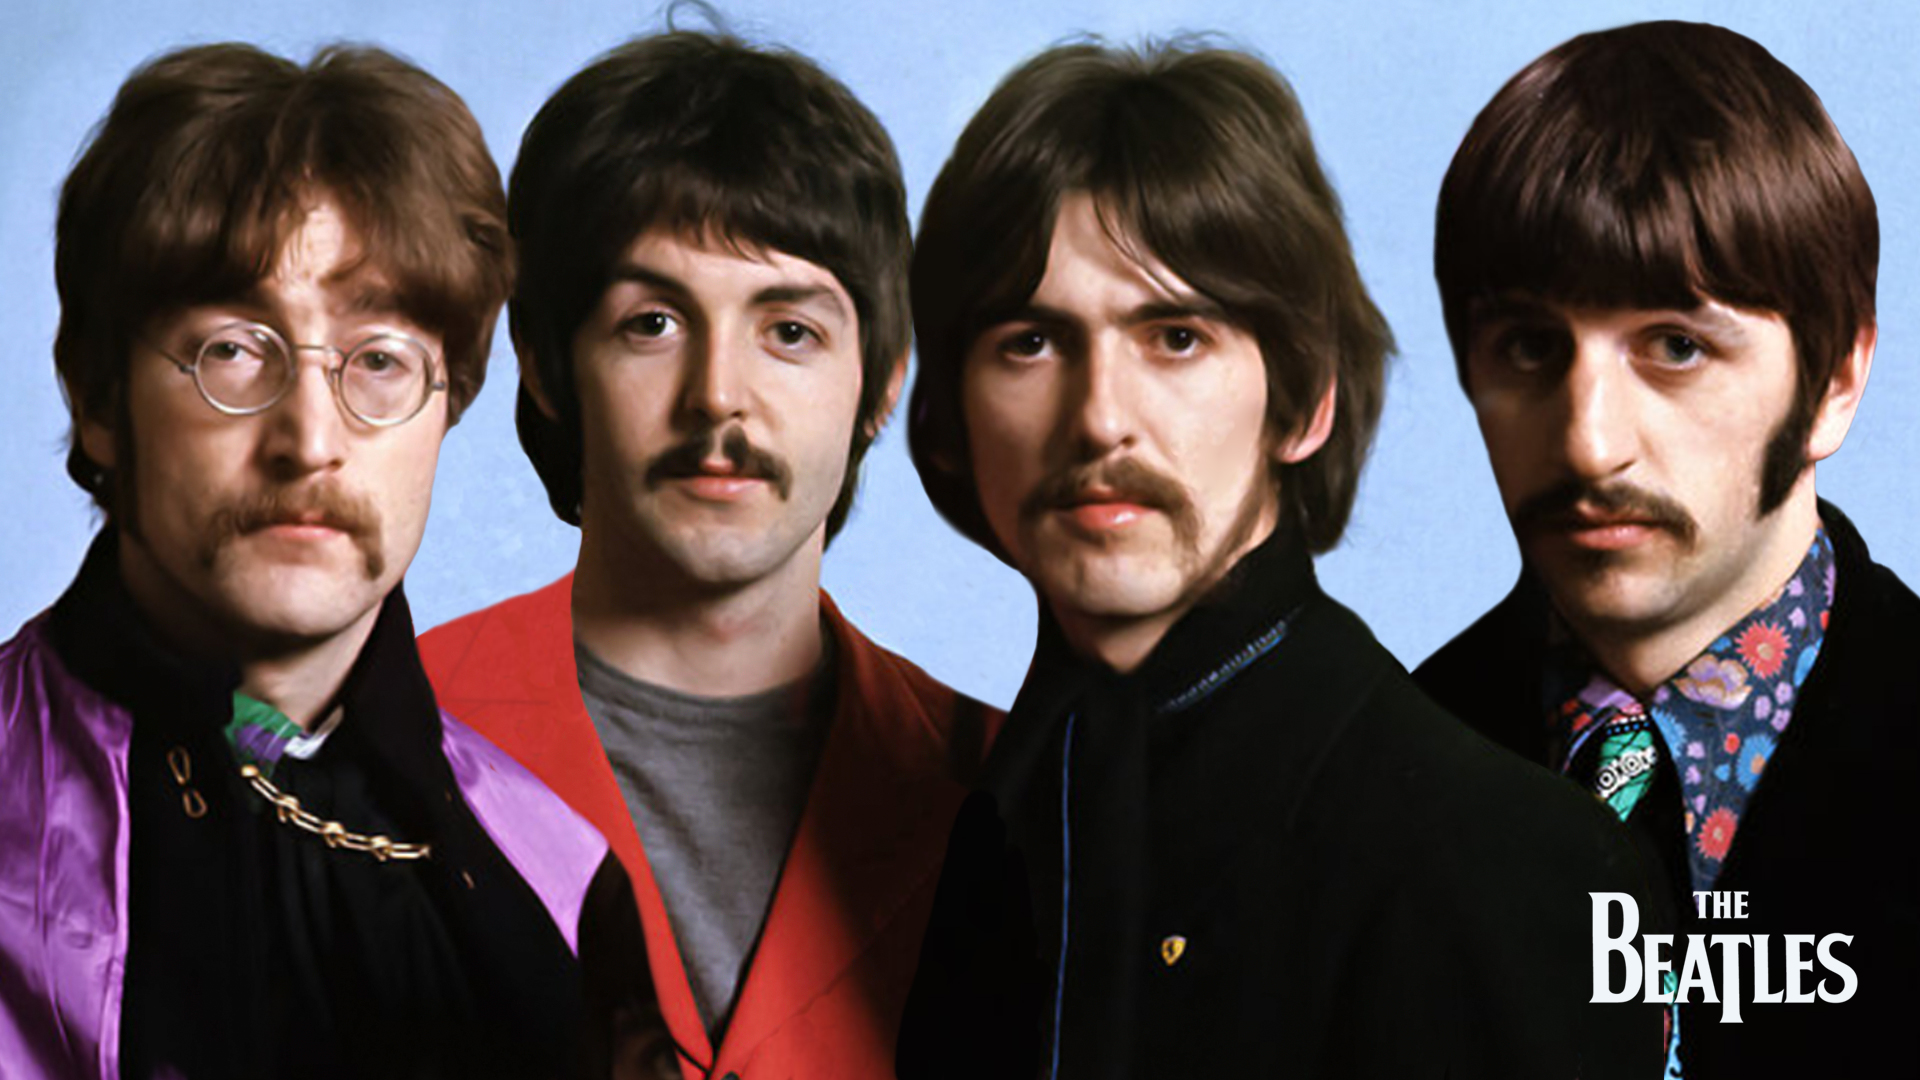 The Beatles. John Lennon - Paul Mccartney - George Harrison - Ringo Starr